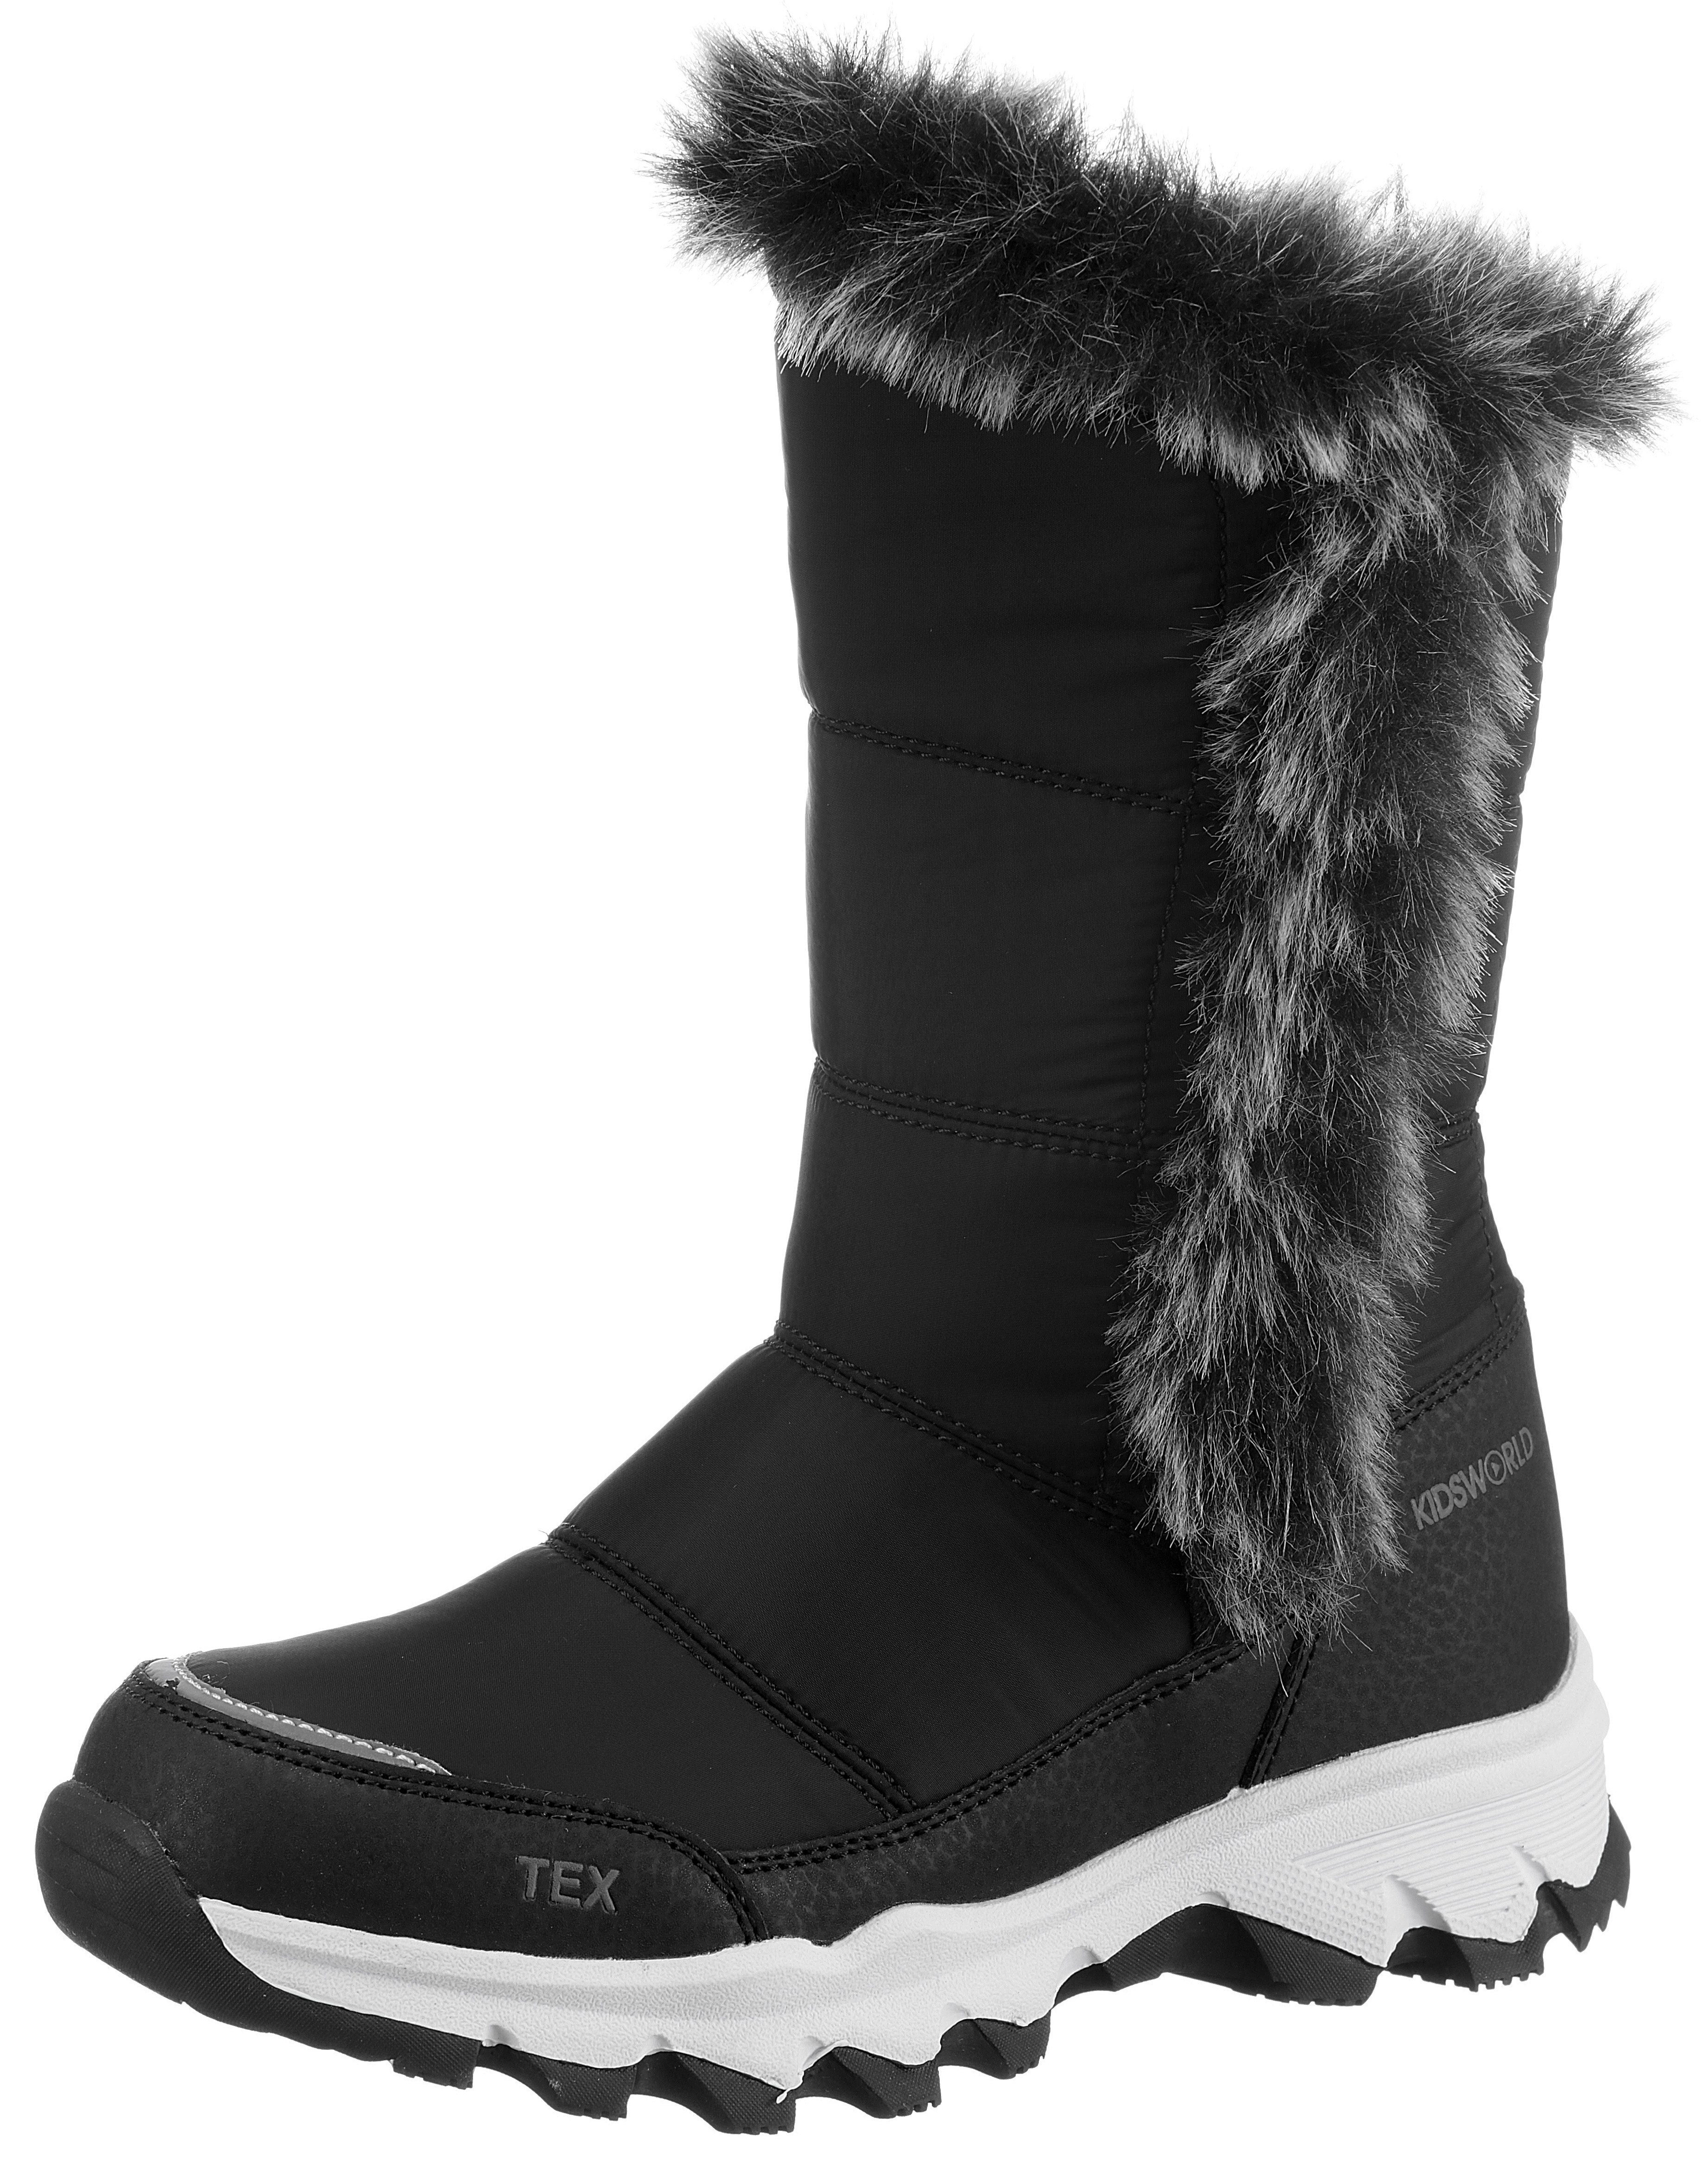 KIDSWORLD Winterstiefel Thermo Stiefel Snowboots mit TEX-Ausstattung und Warmfutter schwarz